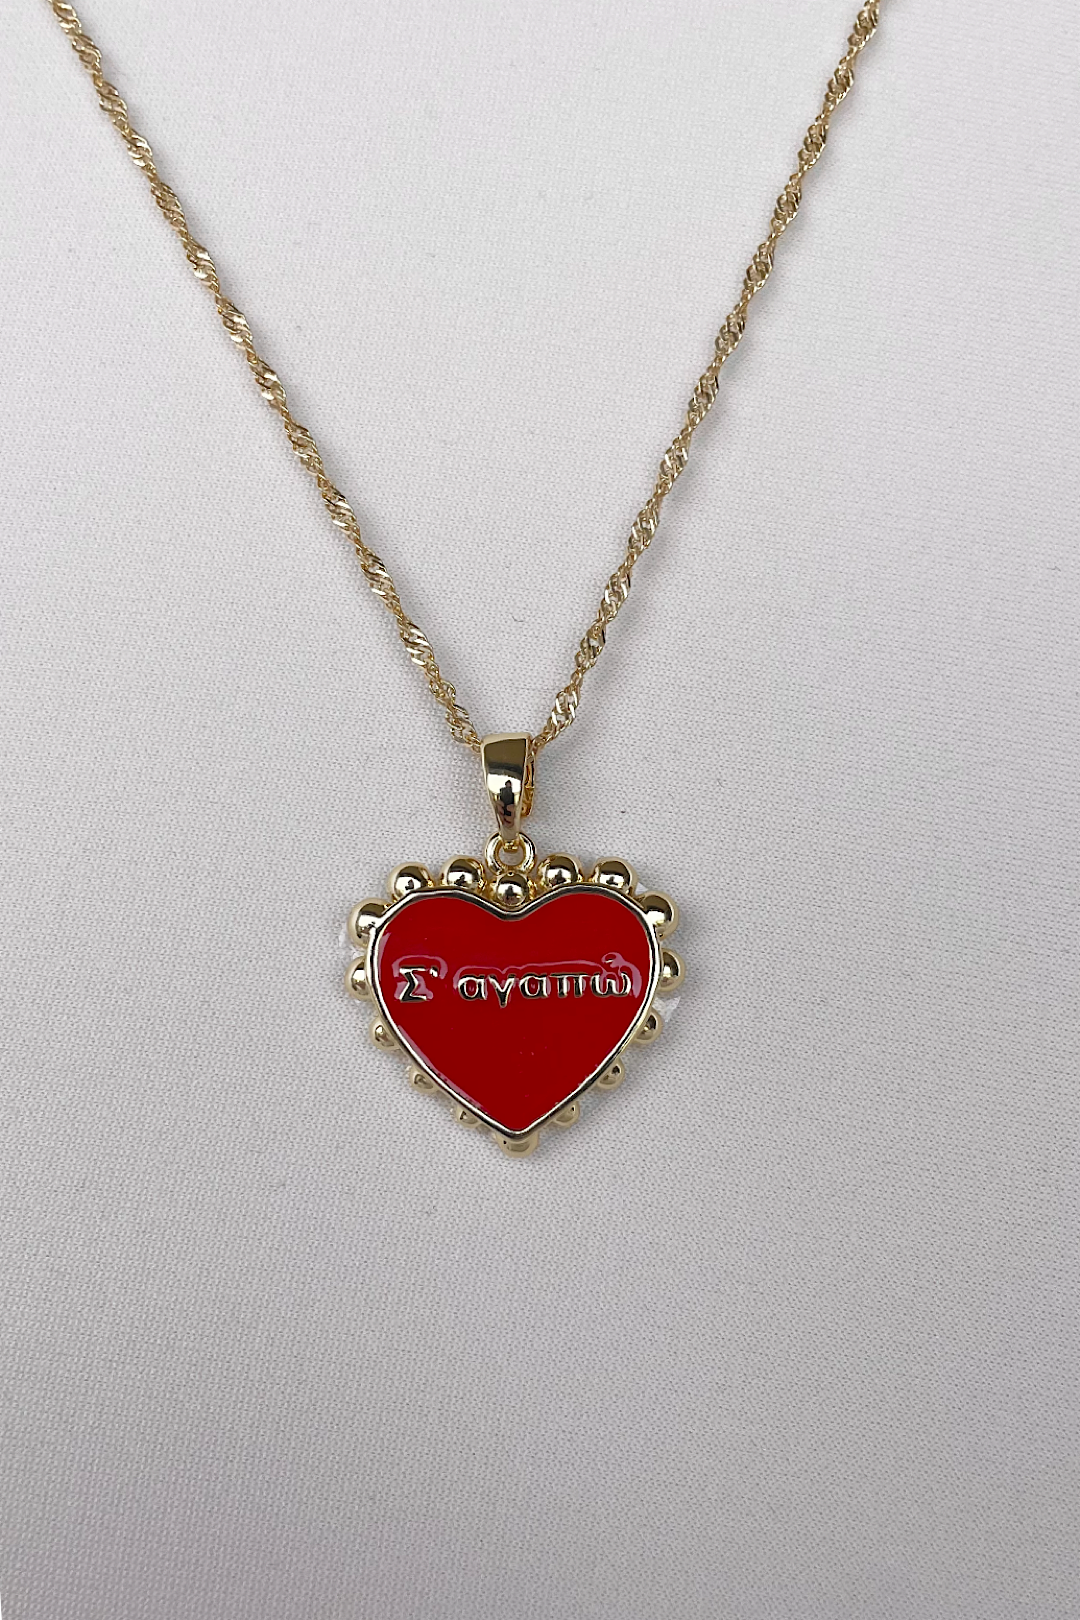 Σε αγαπώ heart necklace